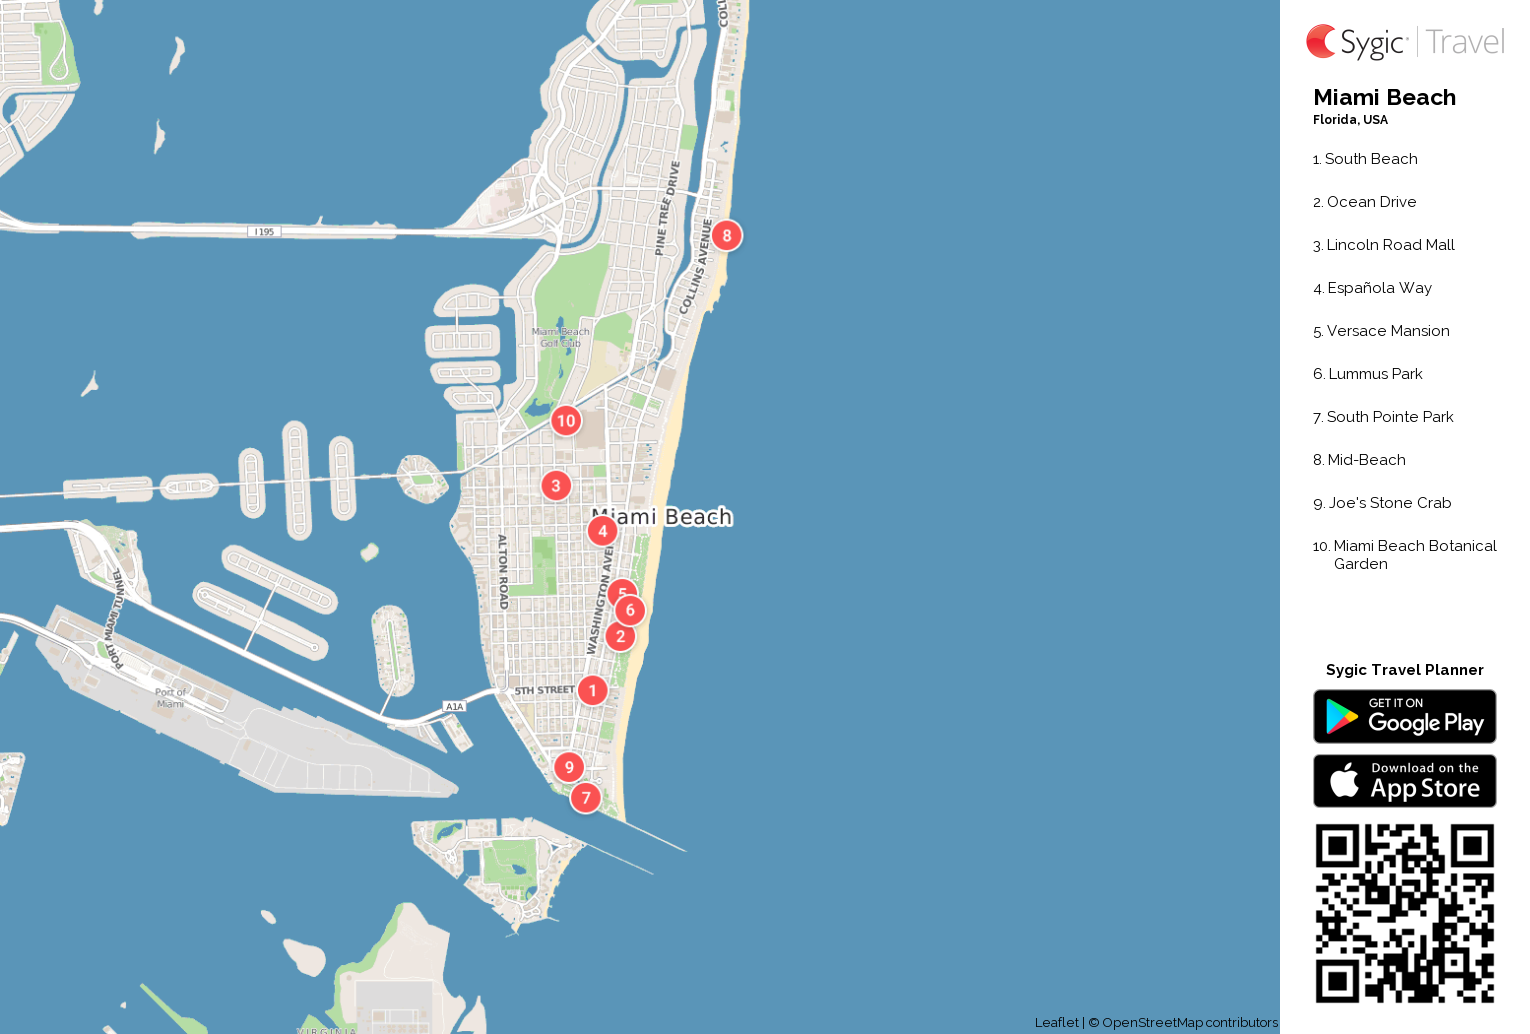 miami beach printable tourist map | sygic travel